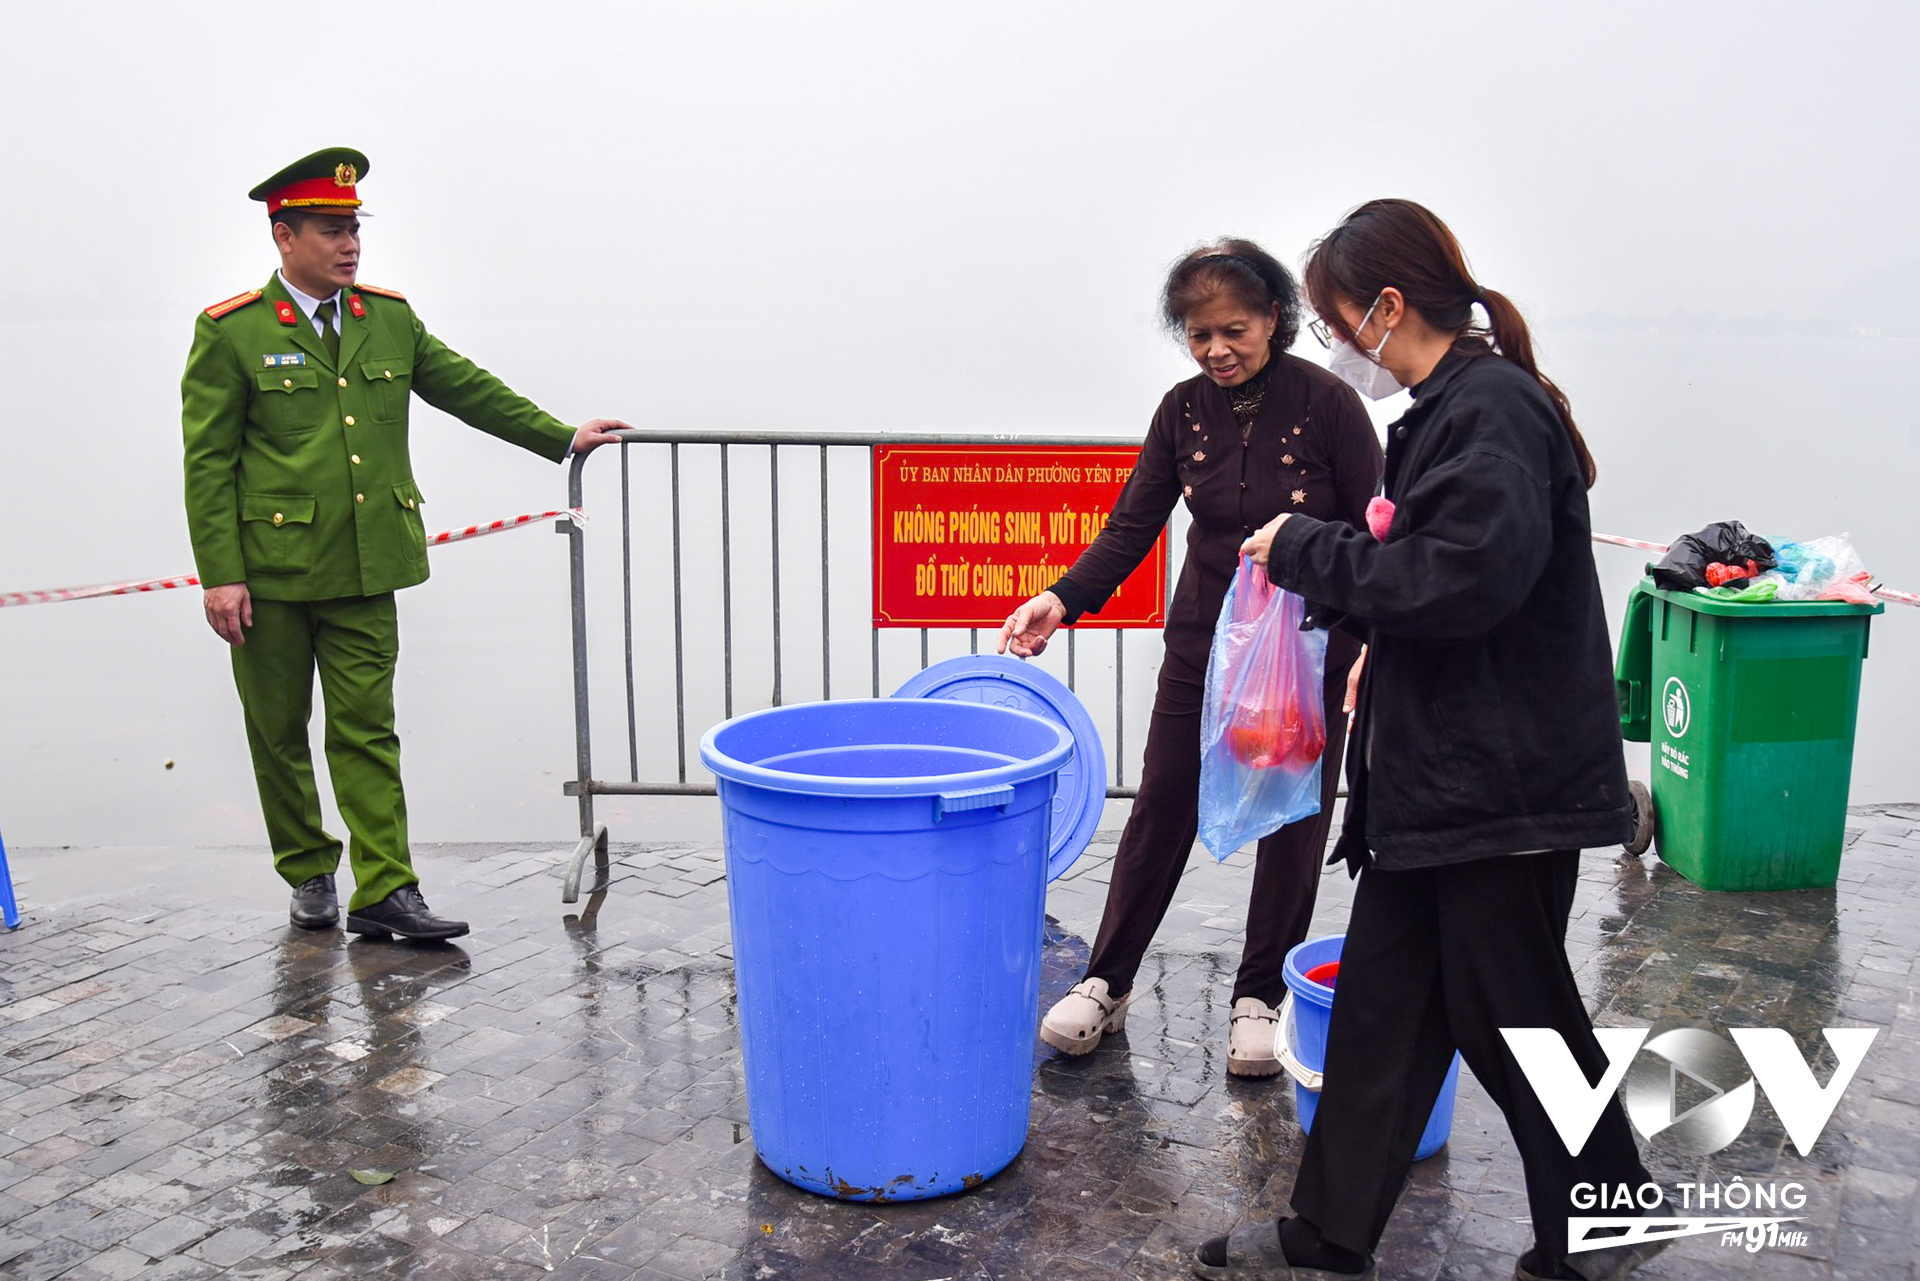 Còn tại khu vực Hồ Tây, ở mặt hồ khu vực đường Thanh Niên, có các lực lượng của phường Yên Phụ, quận Tây Hồ, Hà Nội hỗ trợ người dân thả cá. (Ảnh: Phúc Tài)